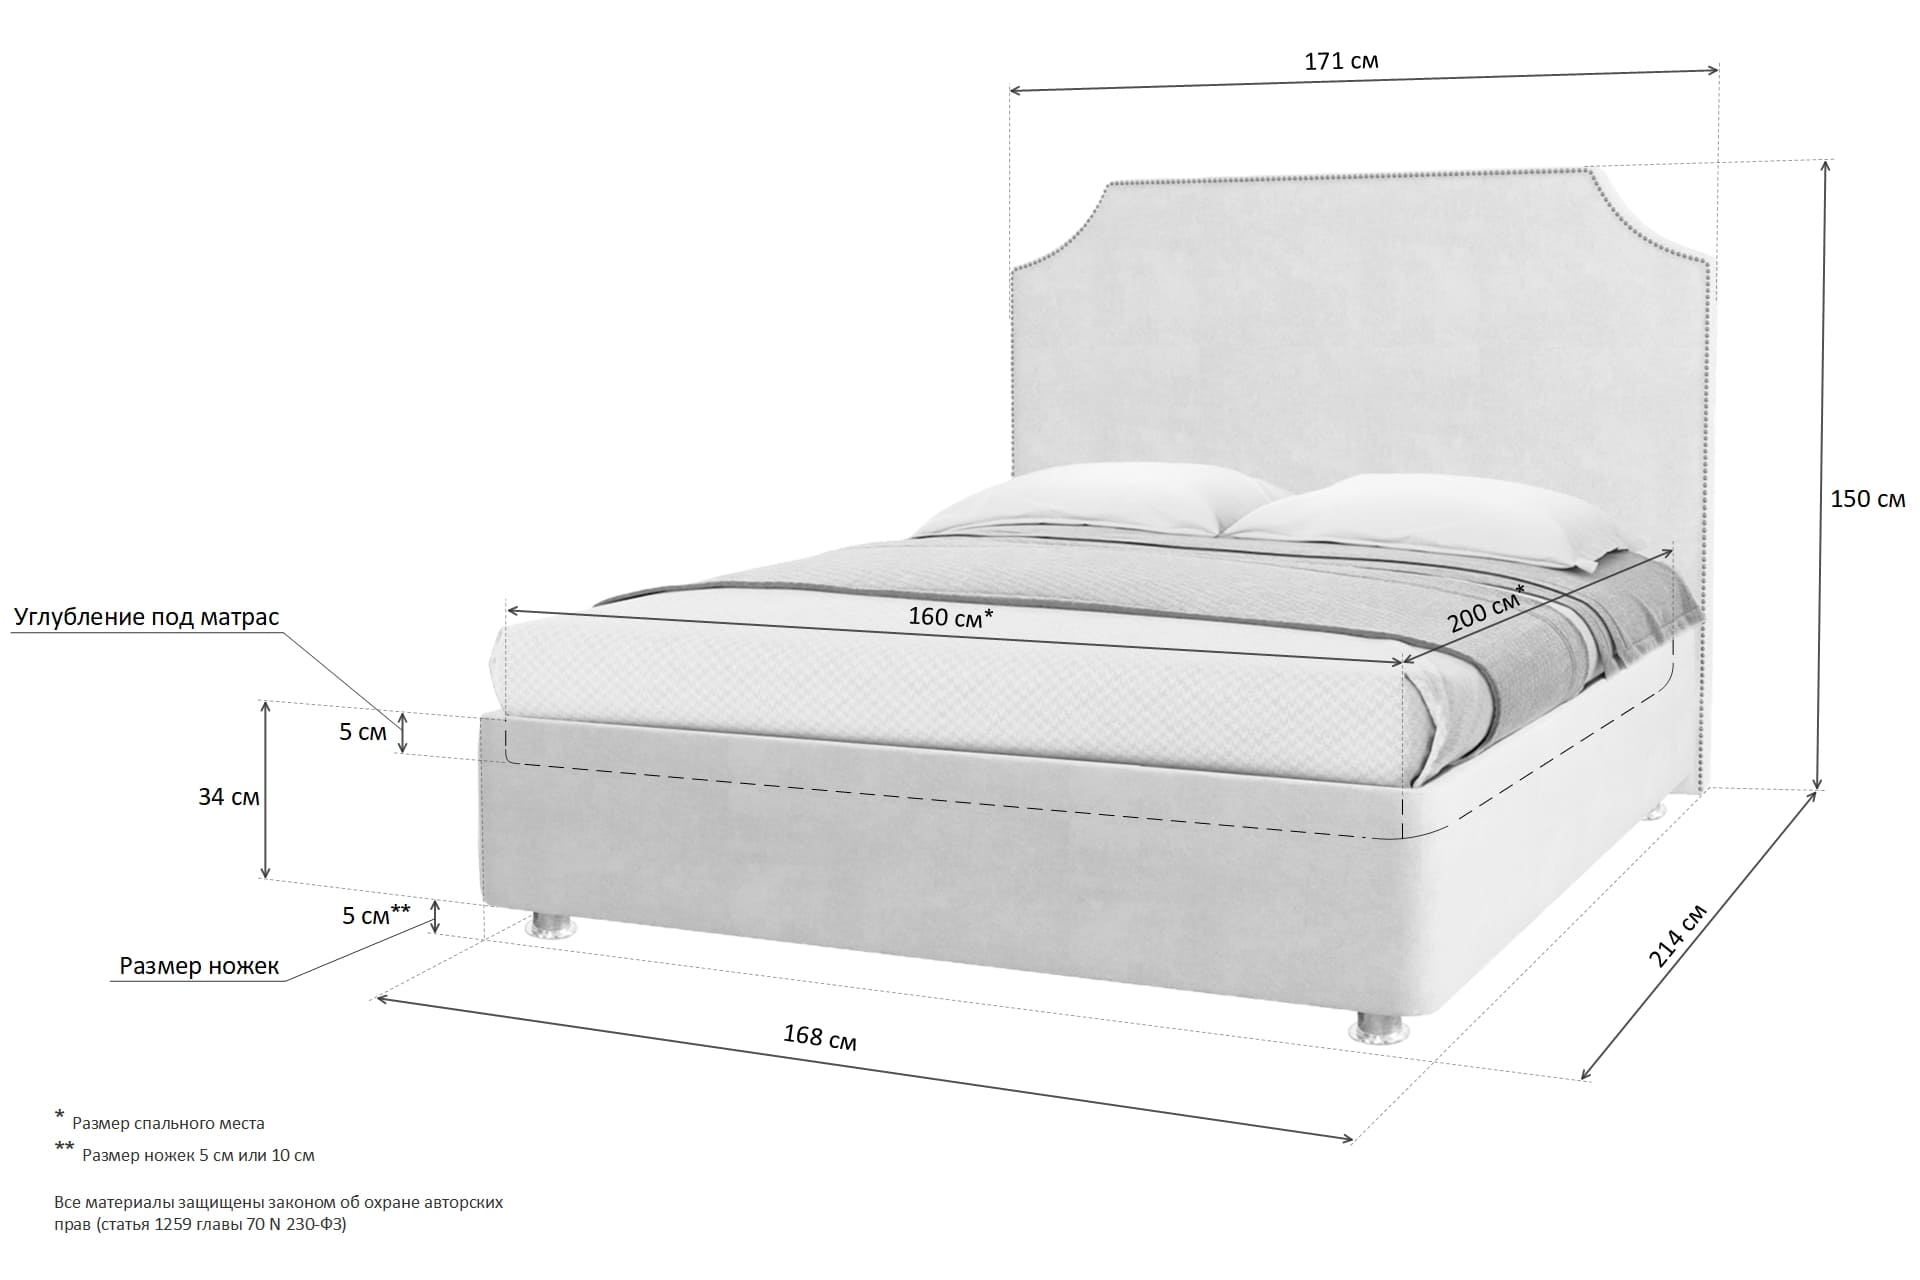 Кровати 2000-160 размер кровати двуспальной стандарт с матрасом